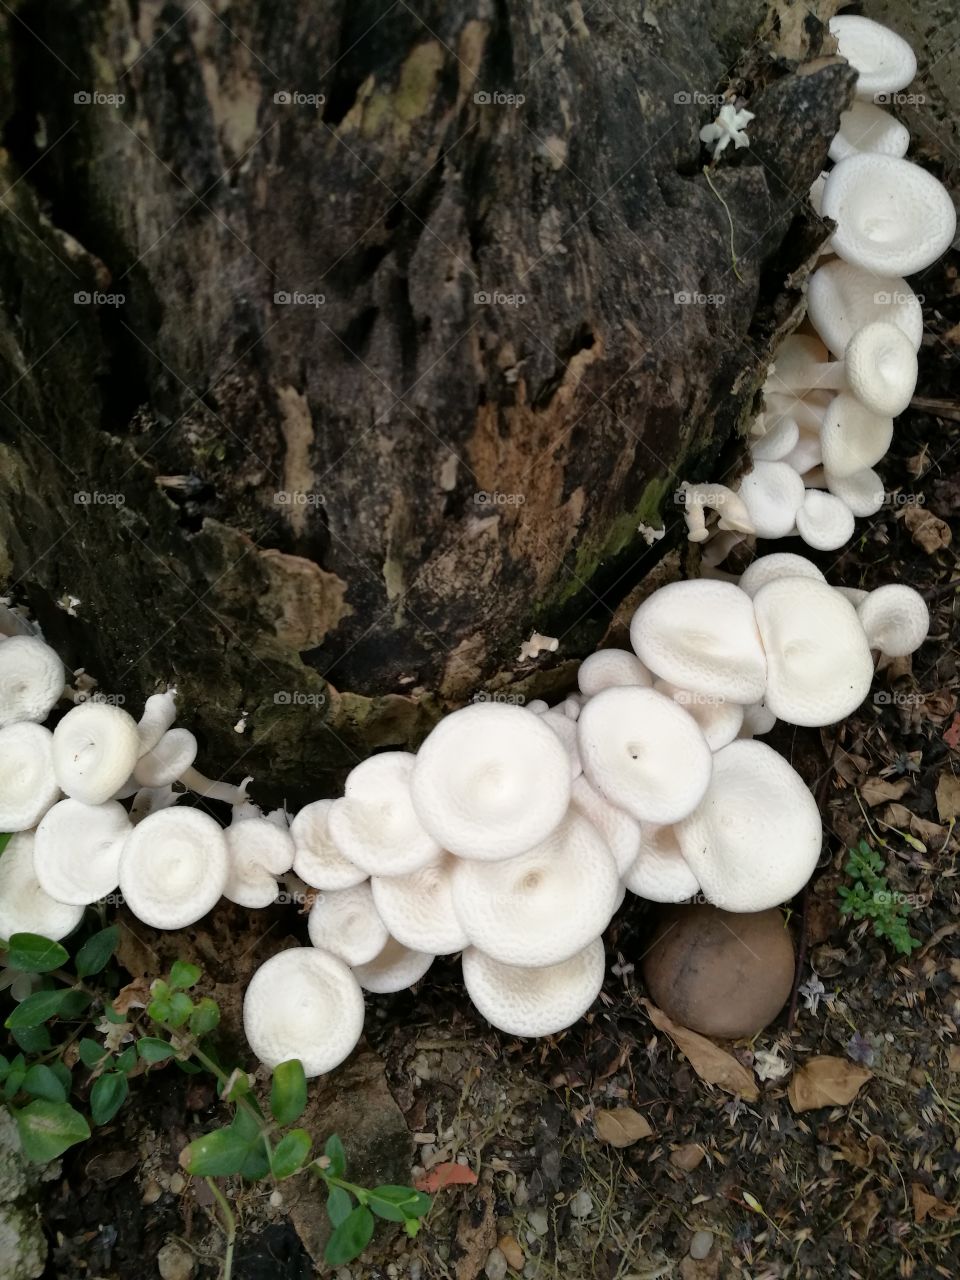 mushrooms growing on tree stump